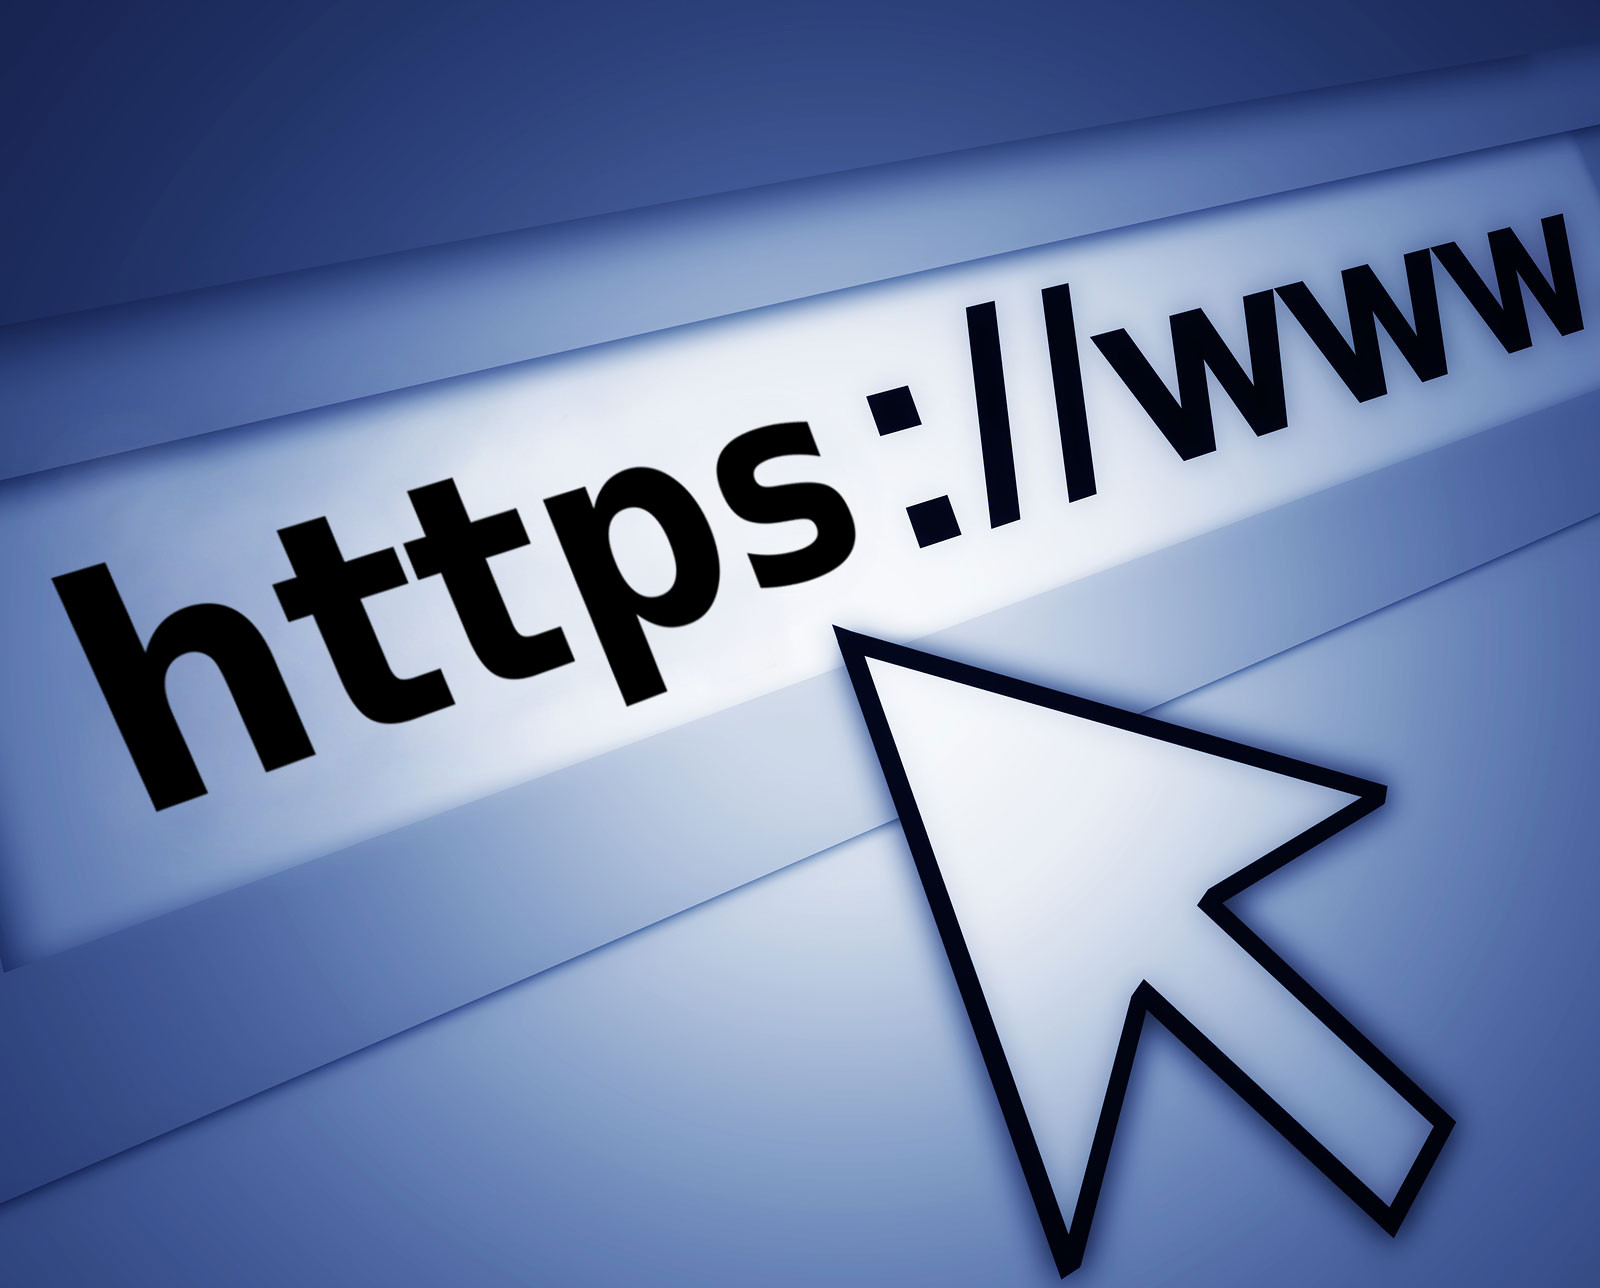 Google veut sécuriser le web avec le HTTPS par défaut